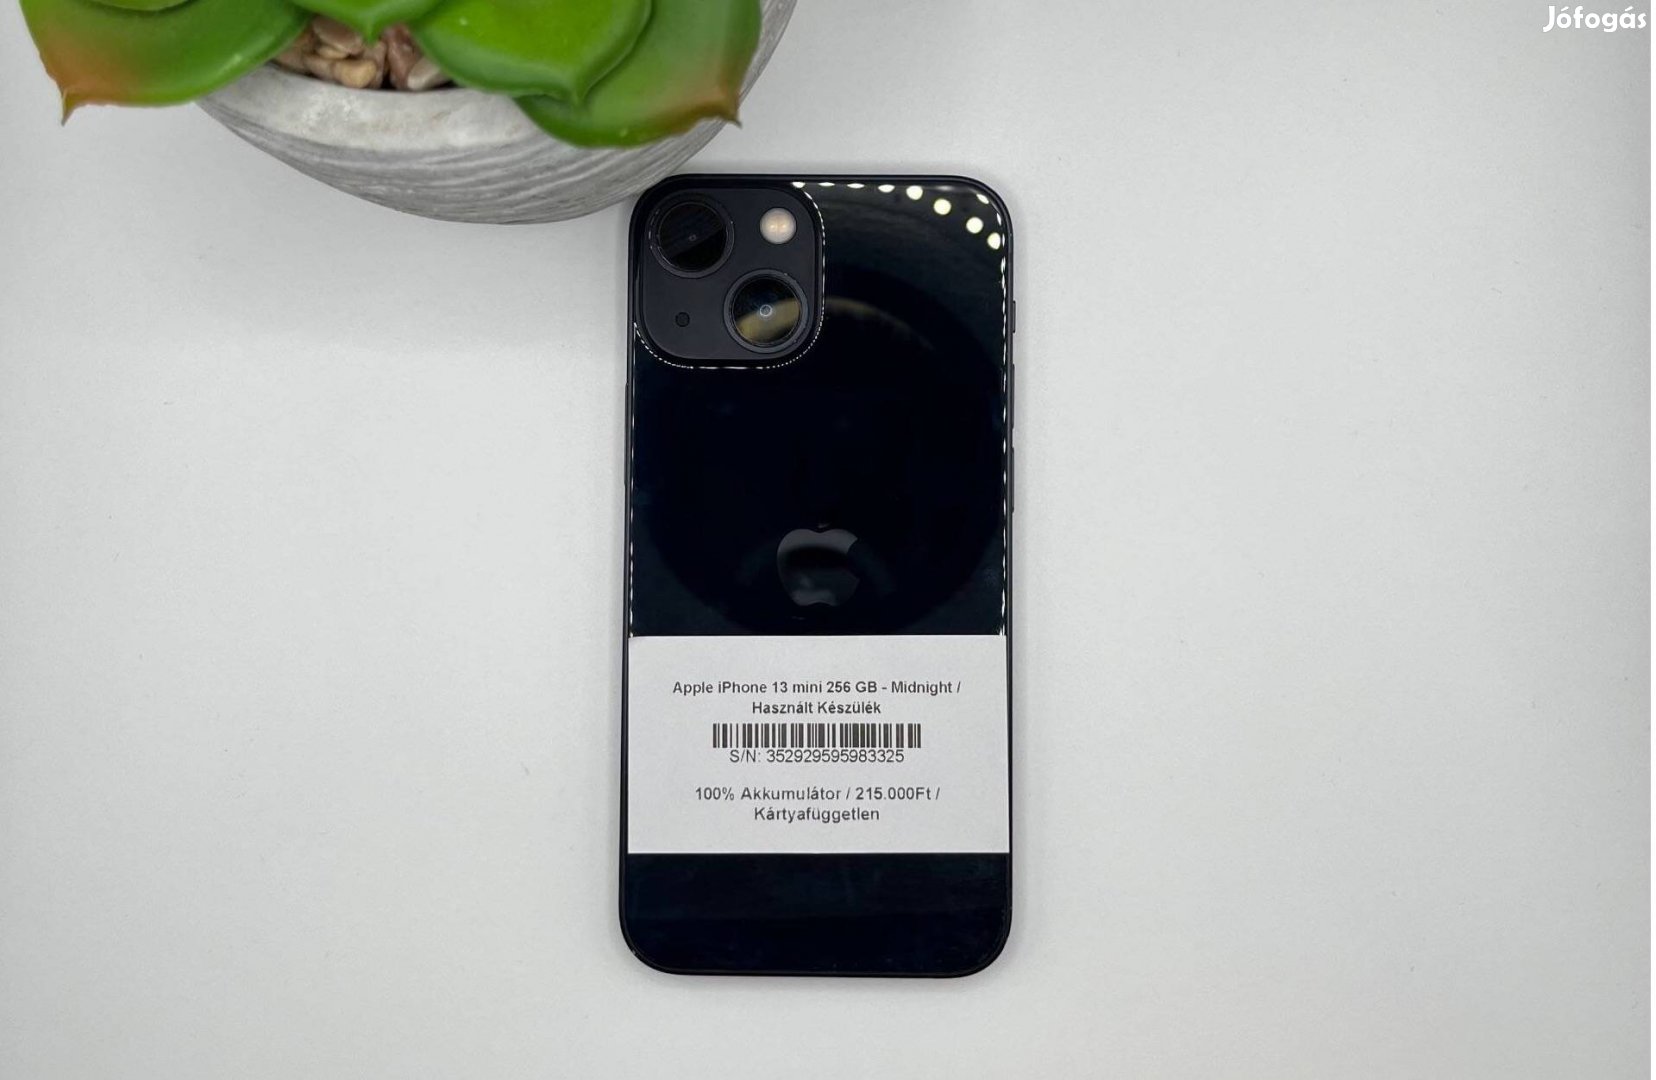 Apple iphone 13 mini 256 GB - Kártyafüggetlen / Használt készülék